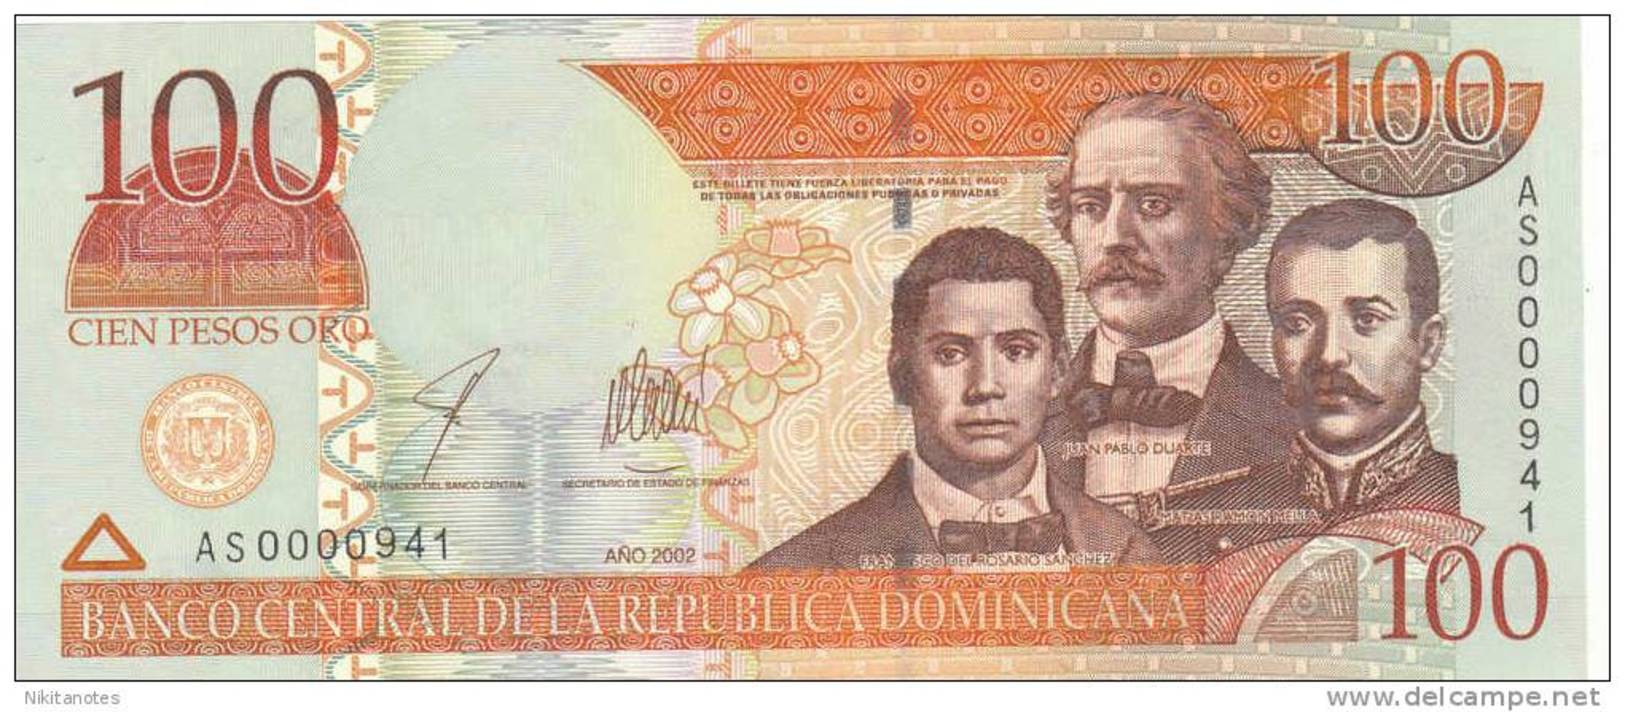 2002 DOMINICAN REPUBLIC 100 PESOS ORO UNC - Repubblica Dominicana